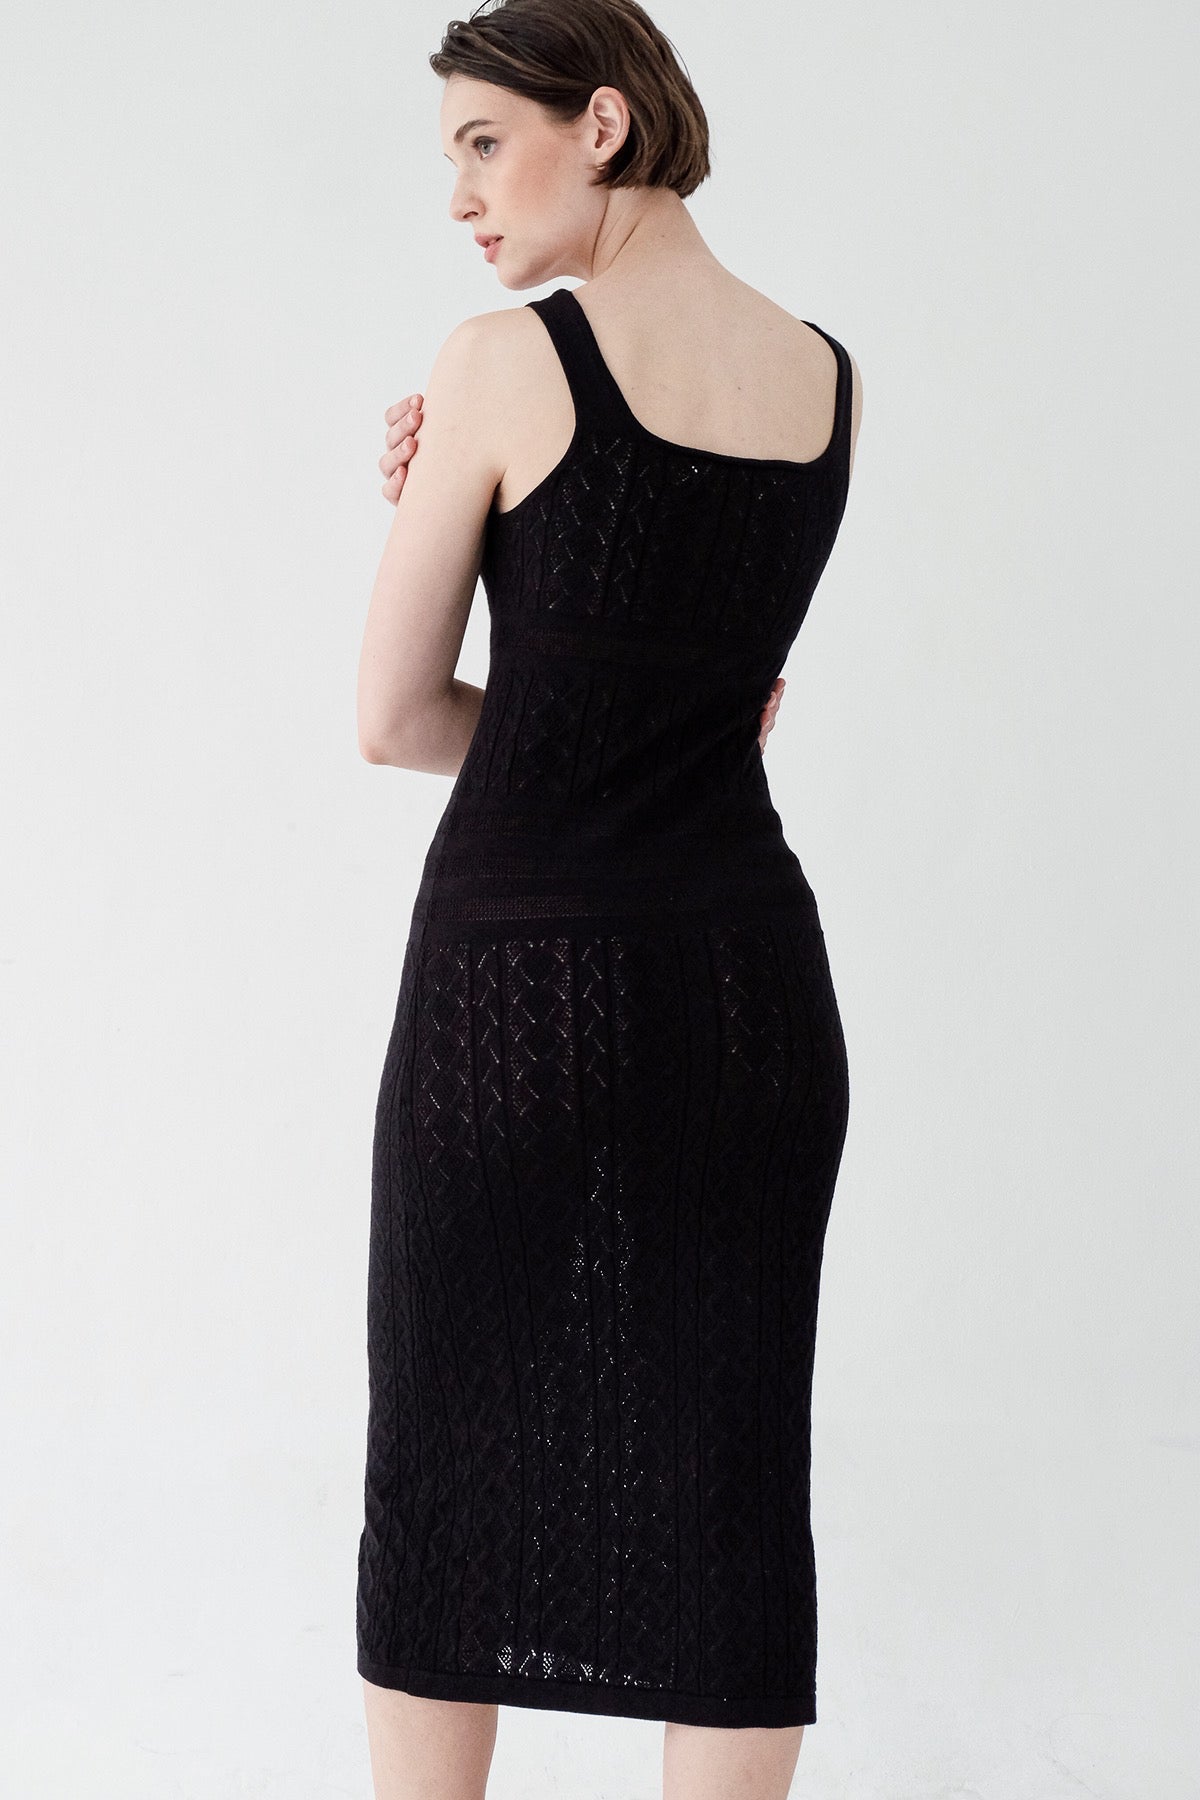 Eterne Dress in Black (2ML LEFT)